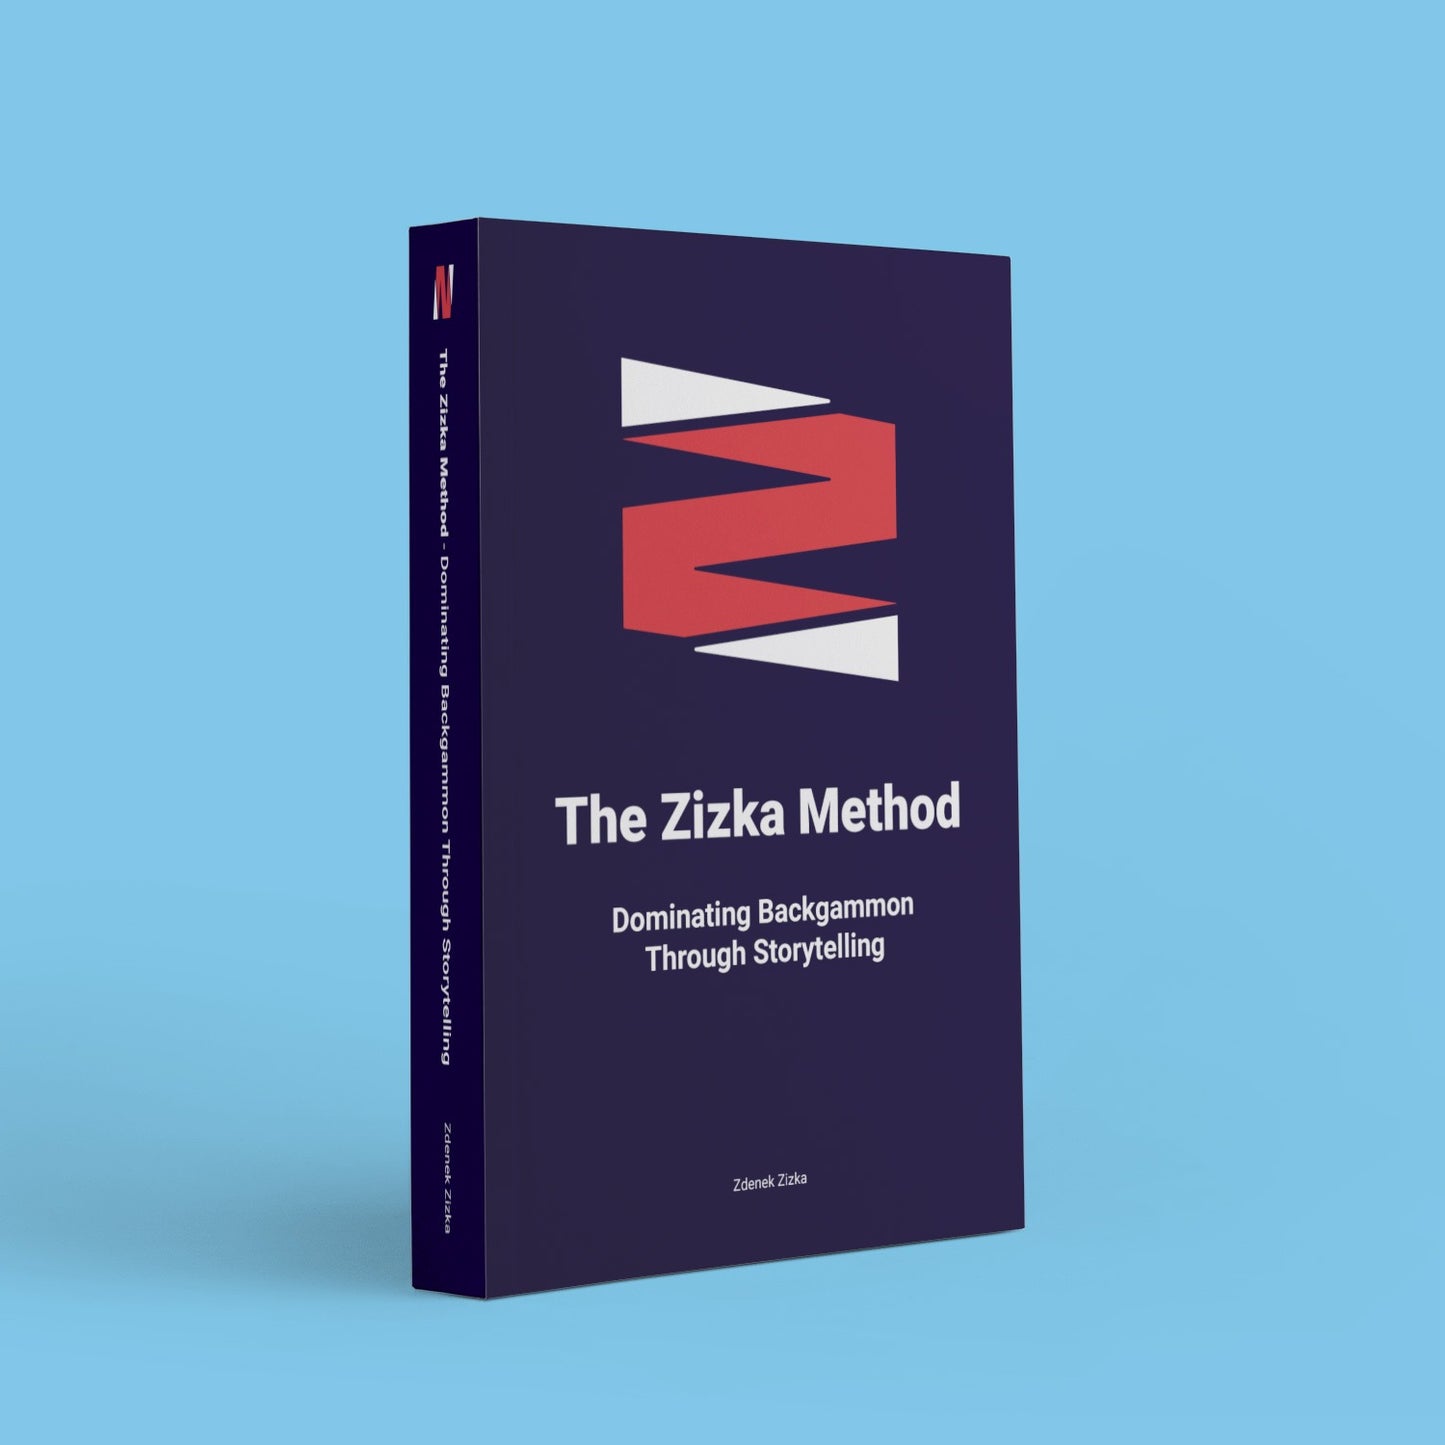 The Zizka Method - Dominating Backgammon Through Storytelling, by Zdenek Zizka